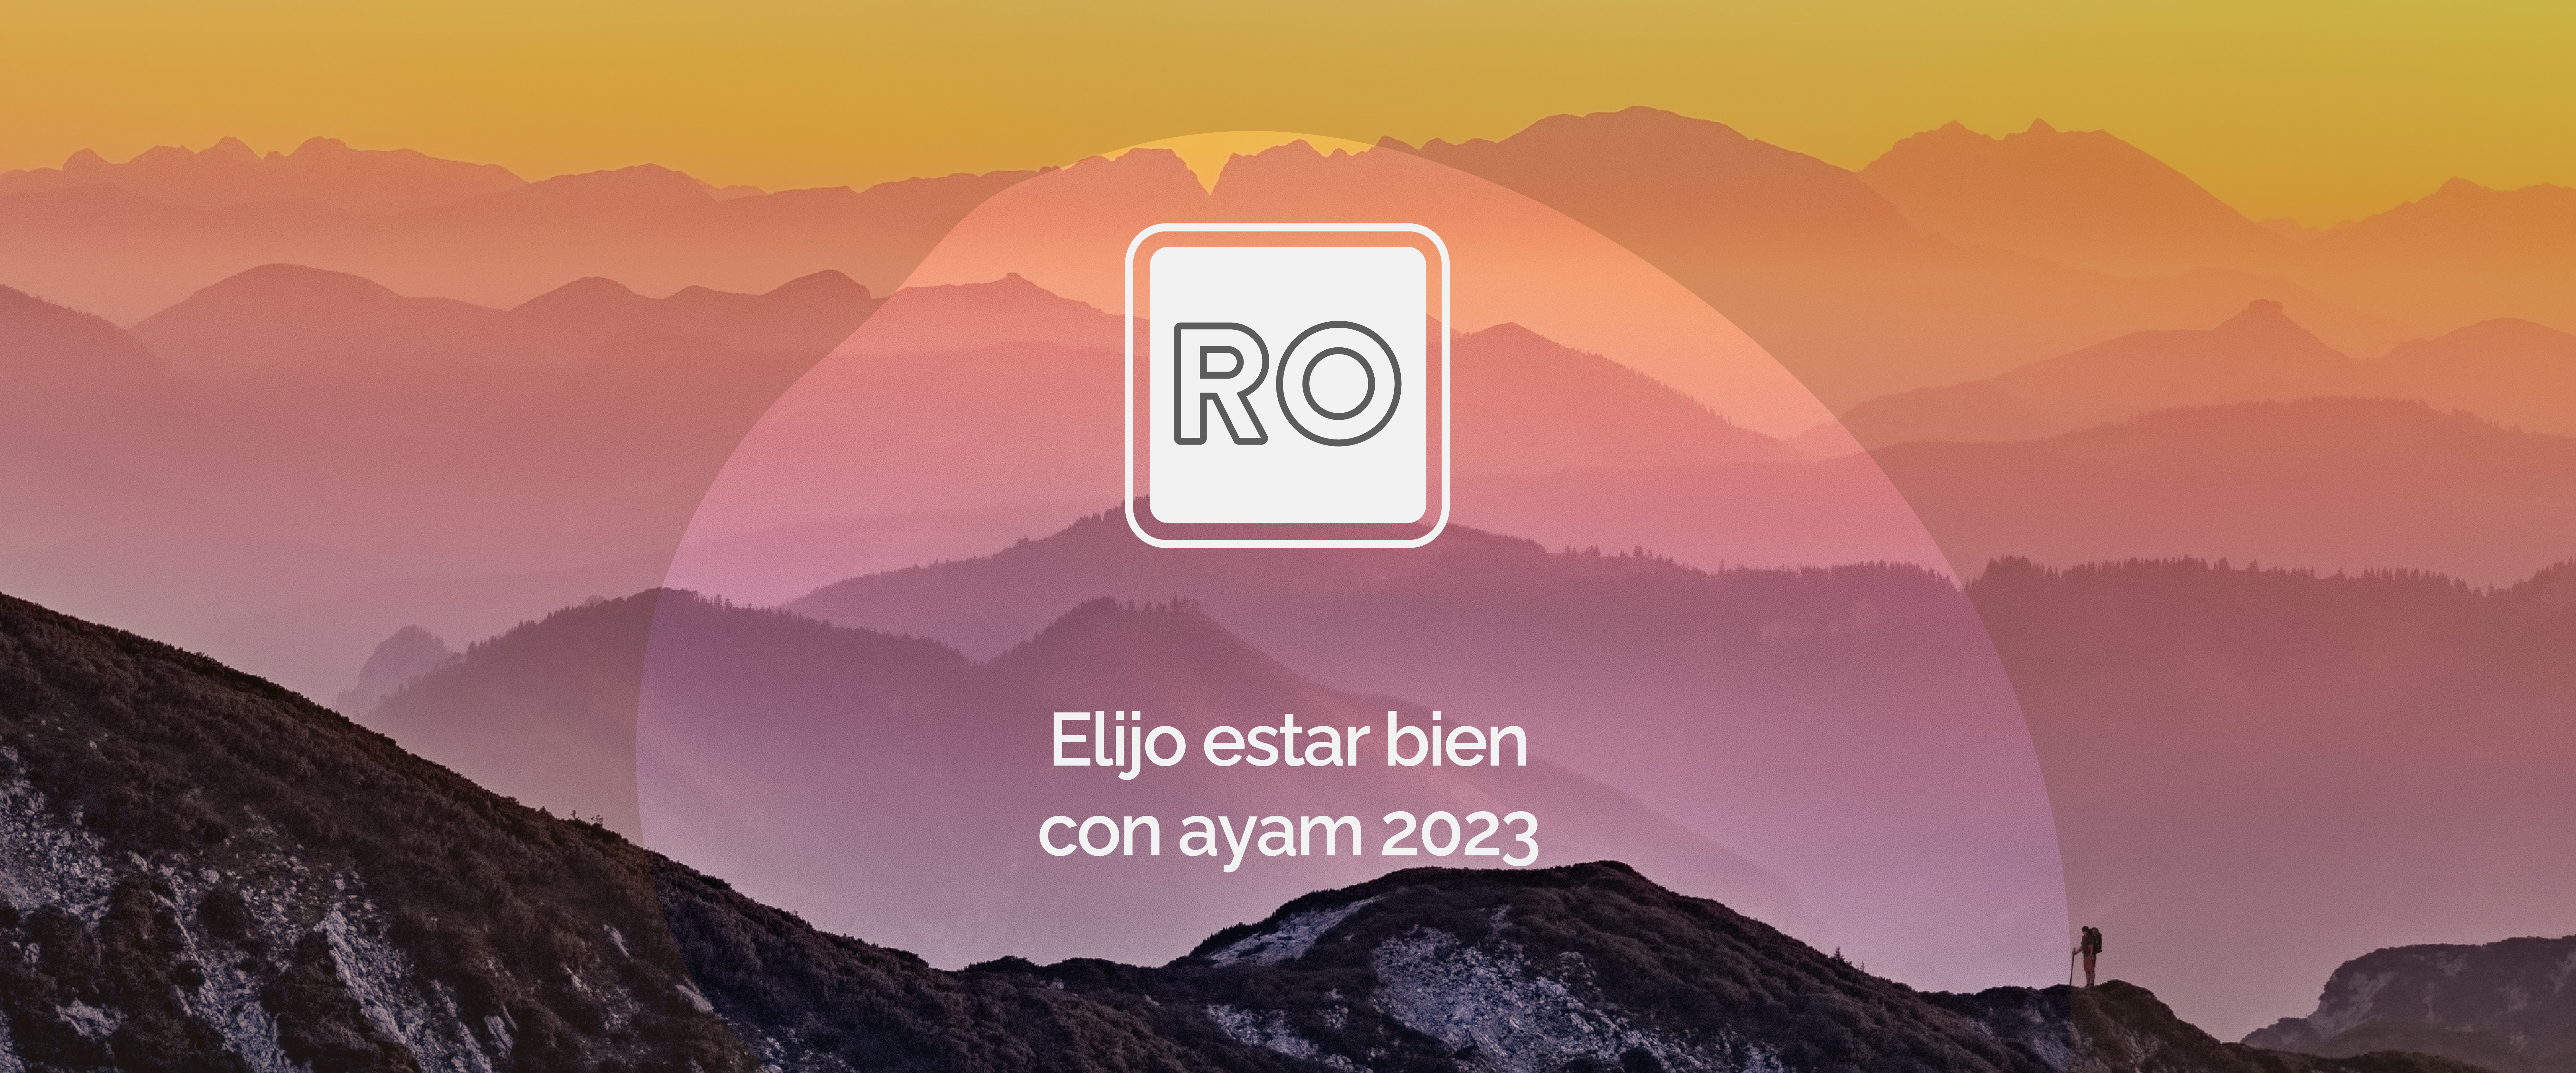 yo-elijo-estar-bien-con-ayam-2023